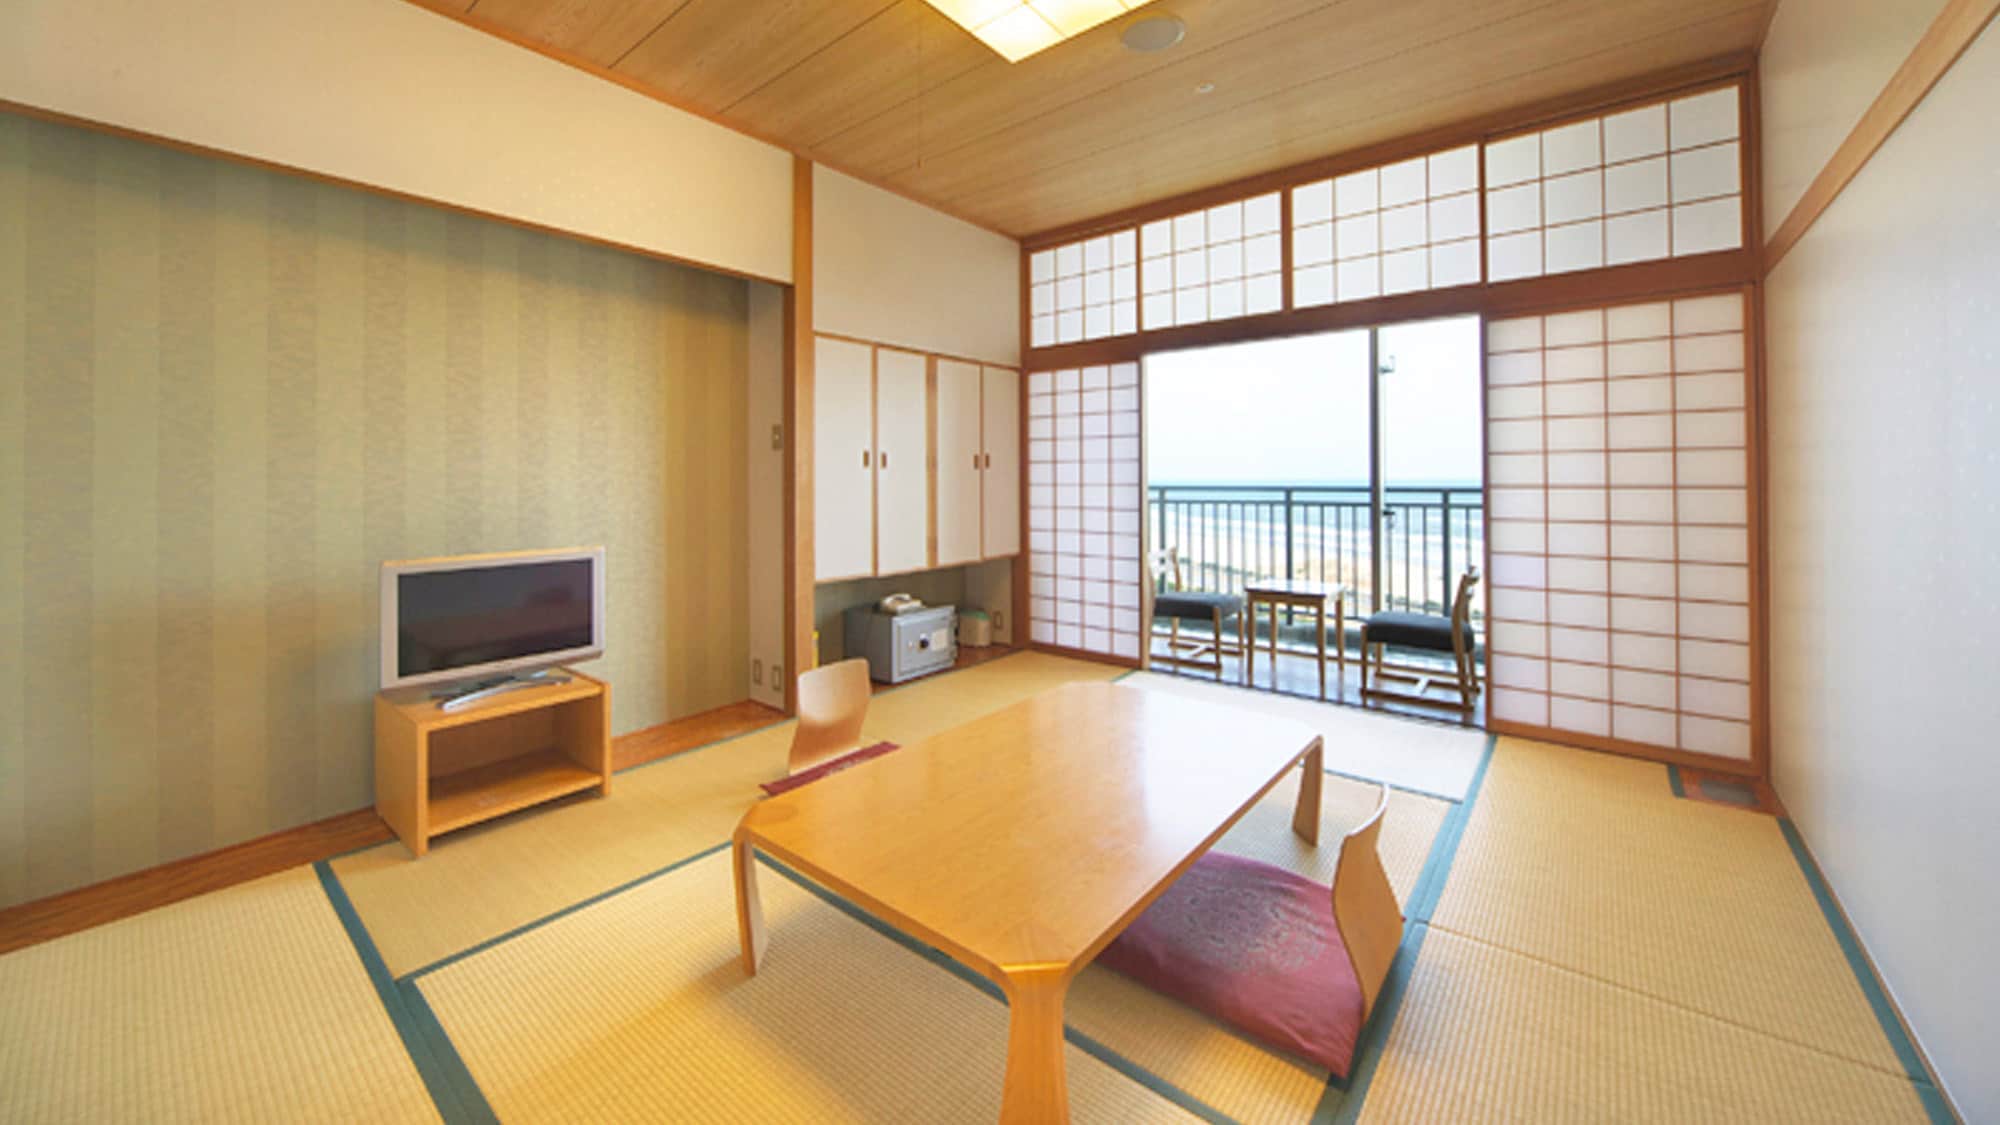 [ห้องสไตล์ญี่ปุ่น 8 เสื่อทาทามิ] ทุกห้องมีวิวทะเล